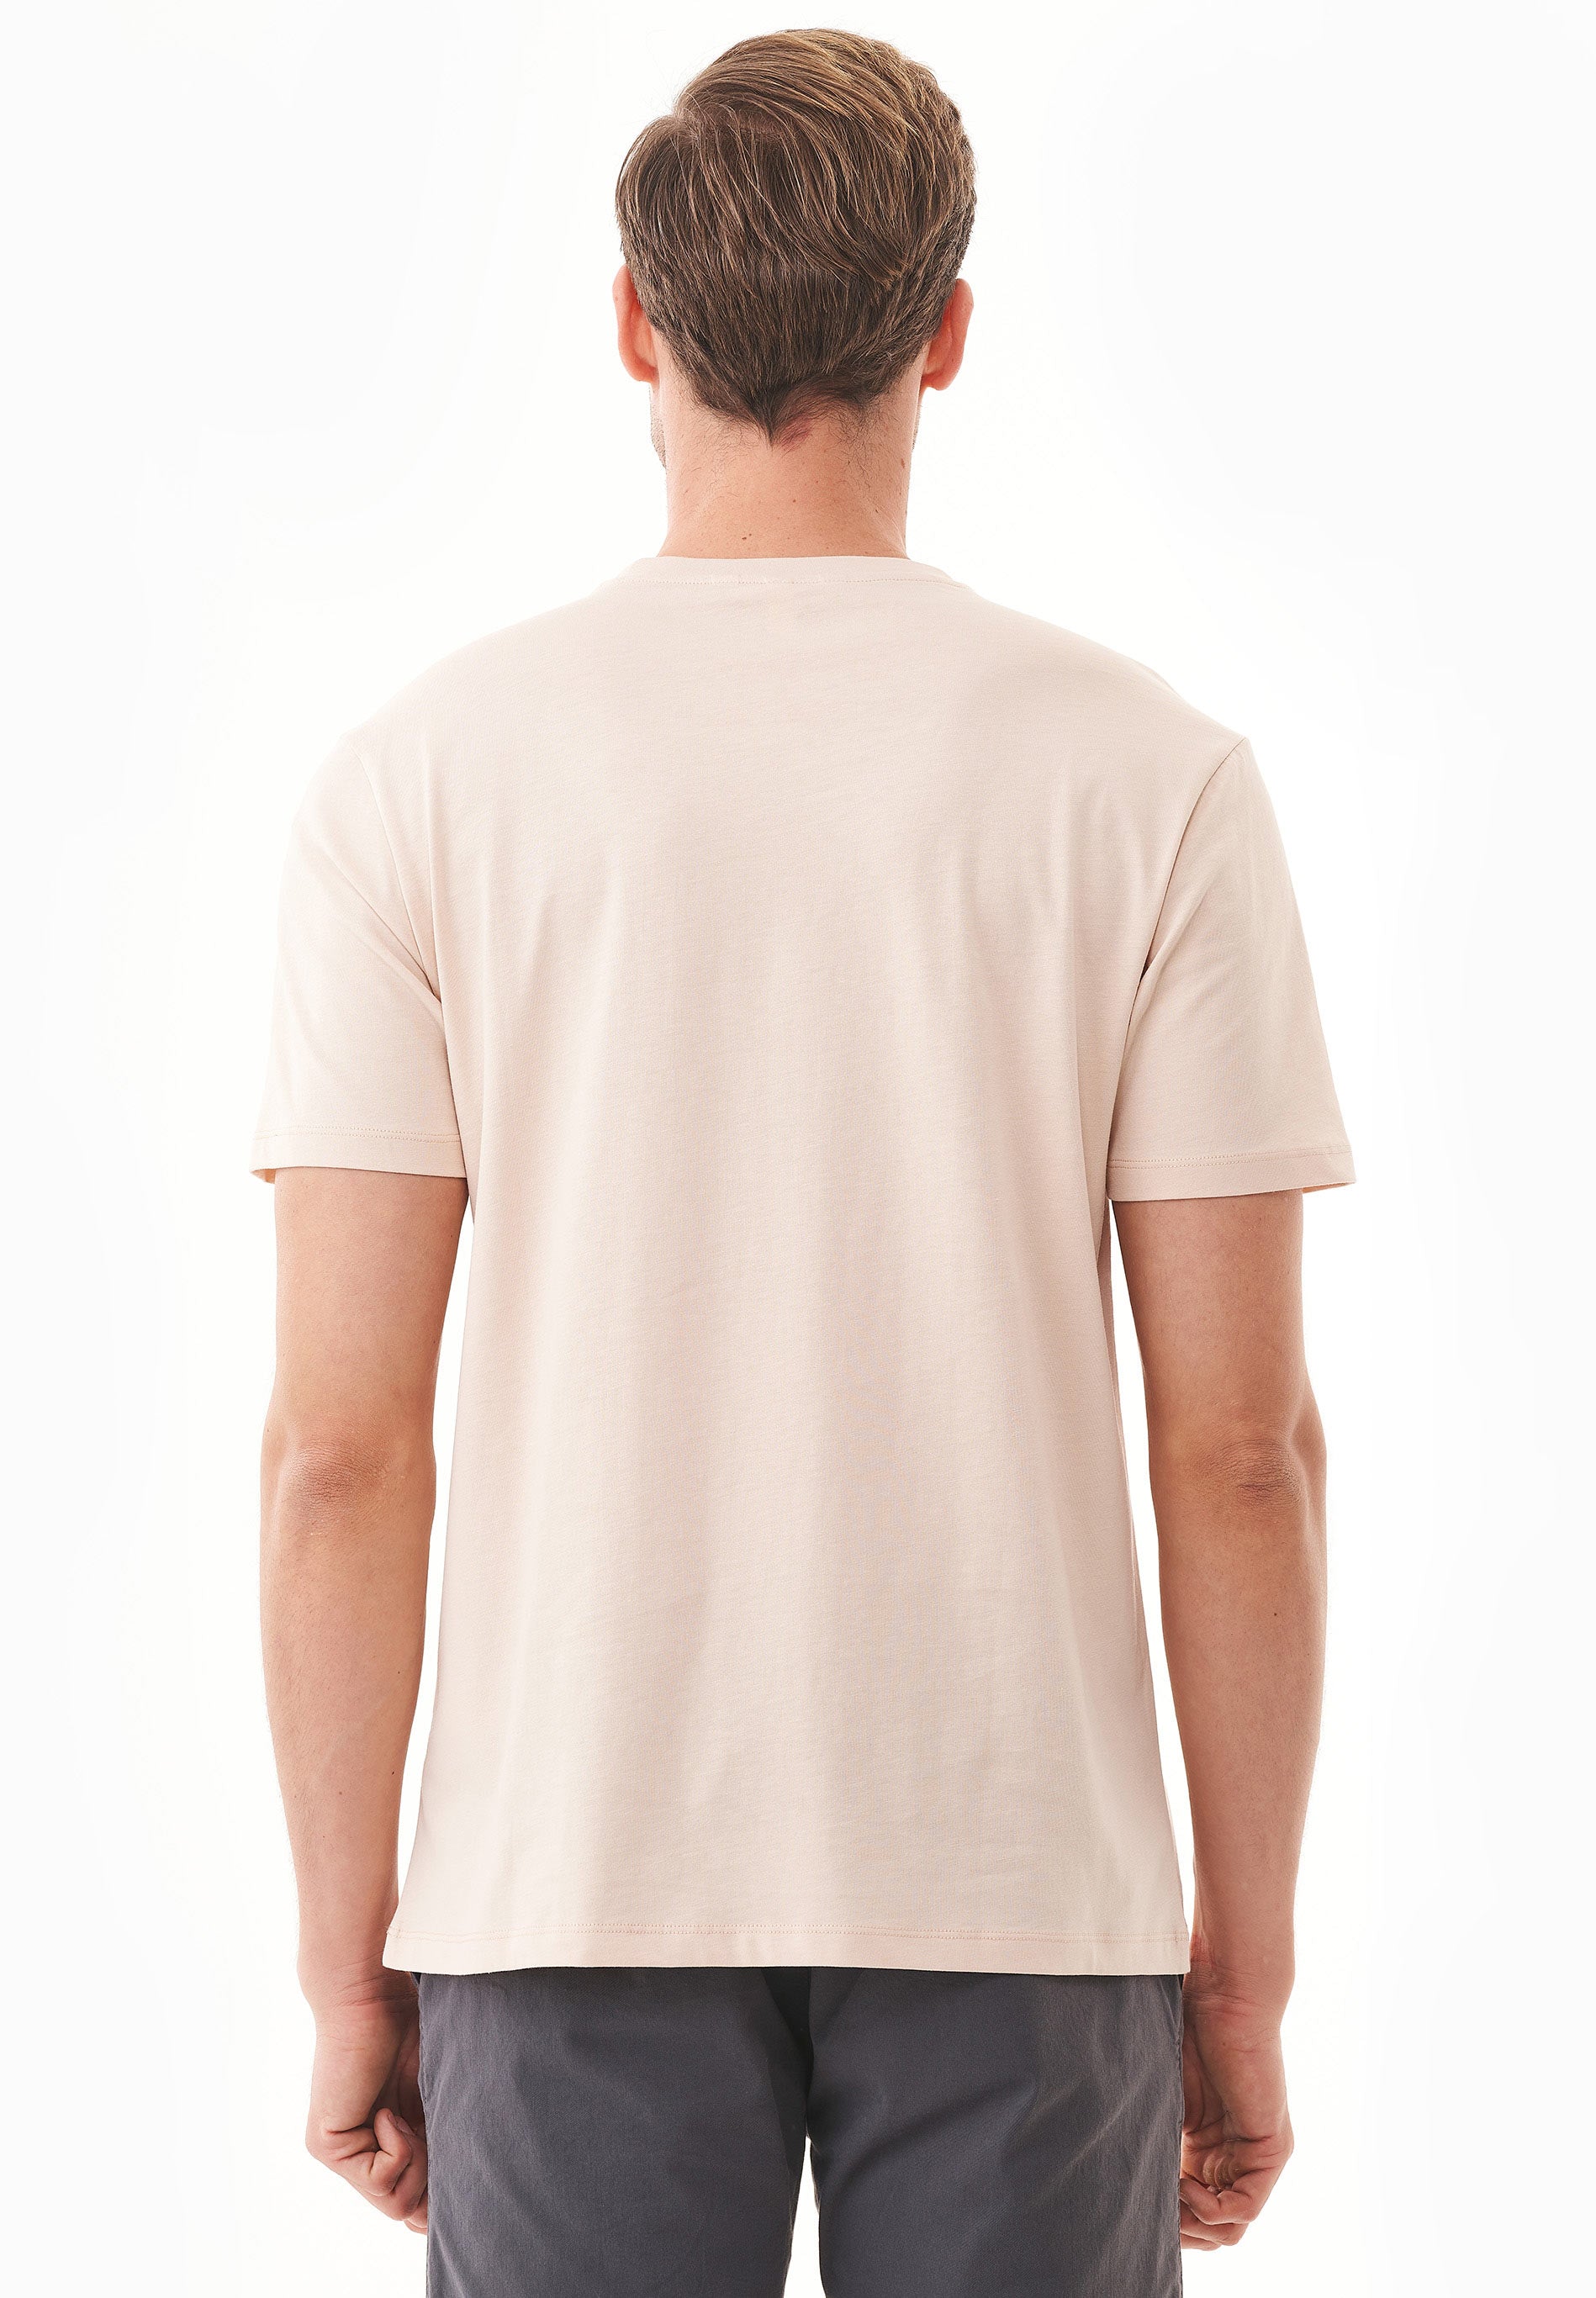 T-Shirt aus Bio-Baumwolle mit Wagen-Print